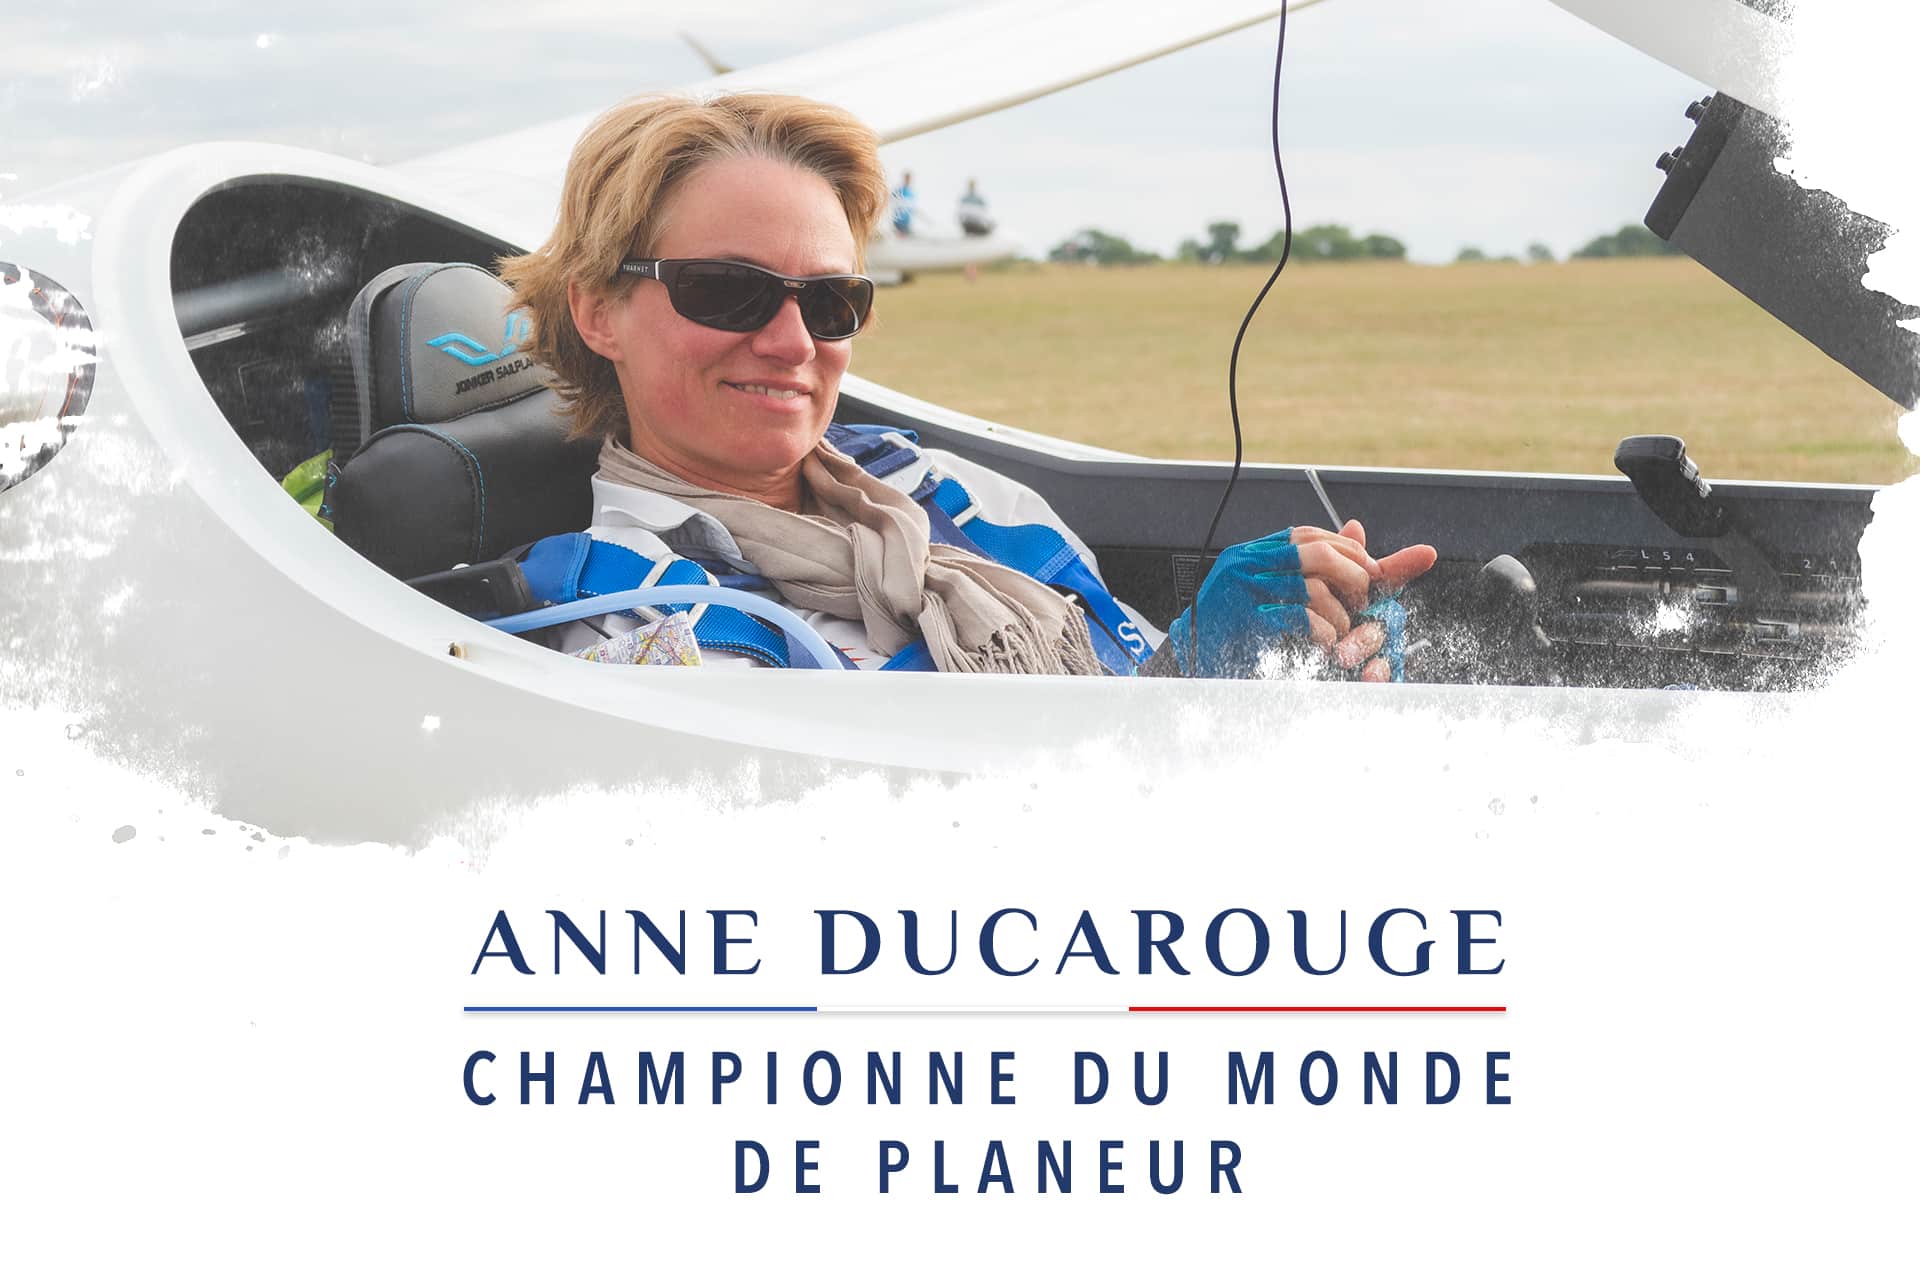 Anne Ducarouge, Championne du Monde de Vol en Planeur